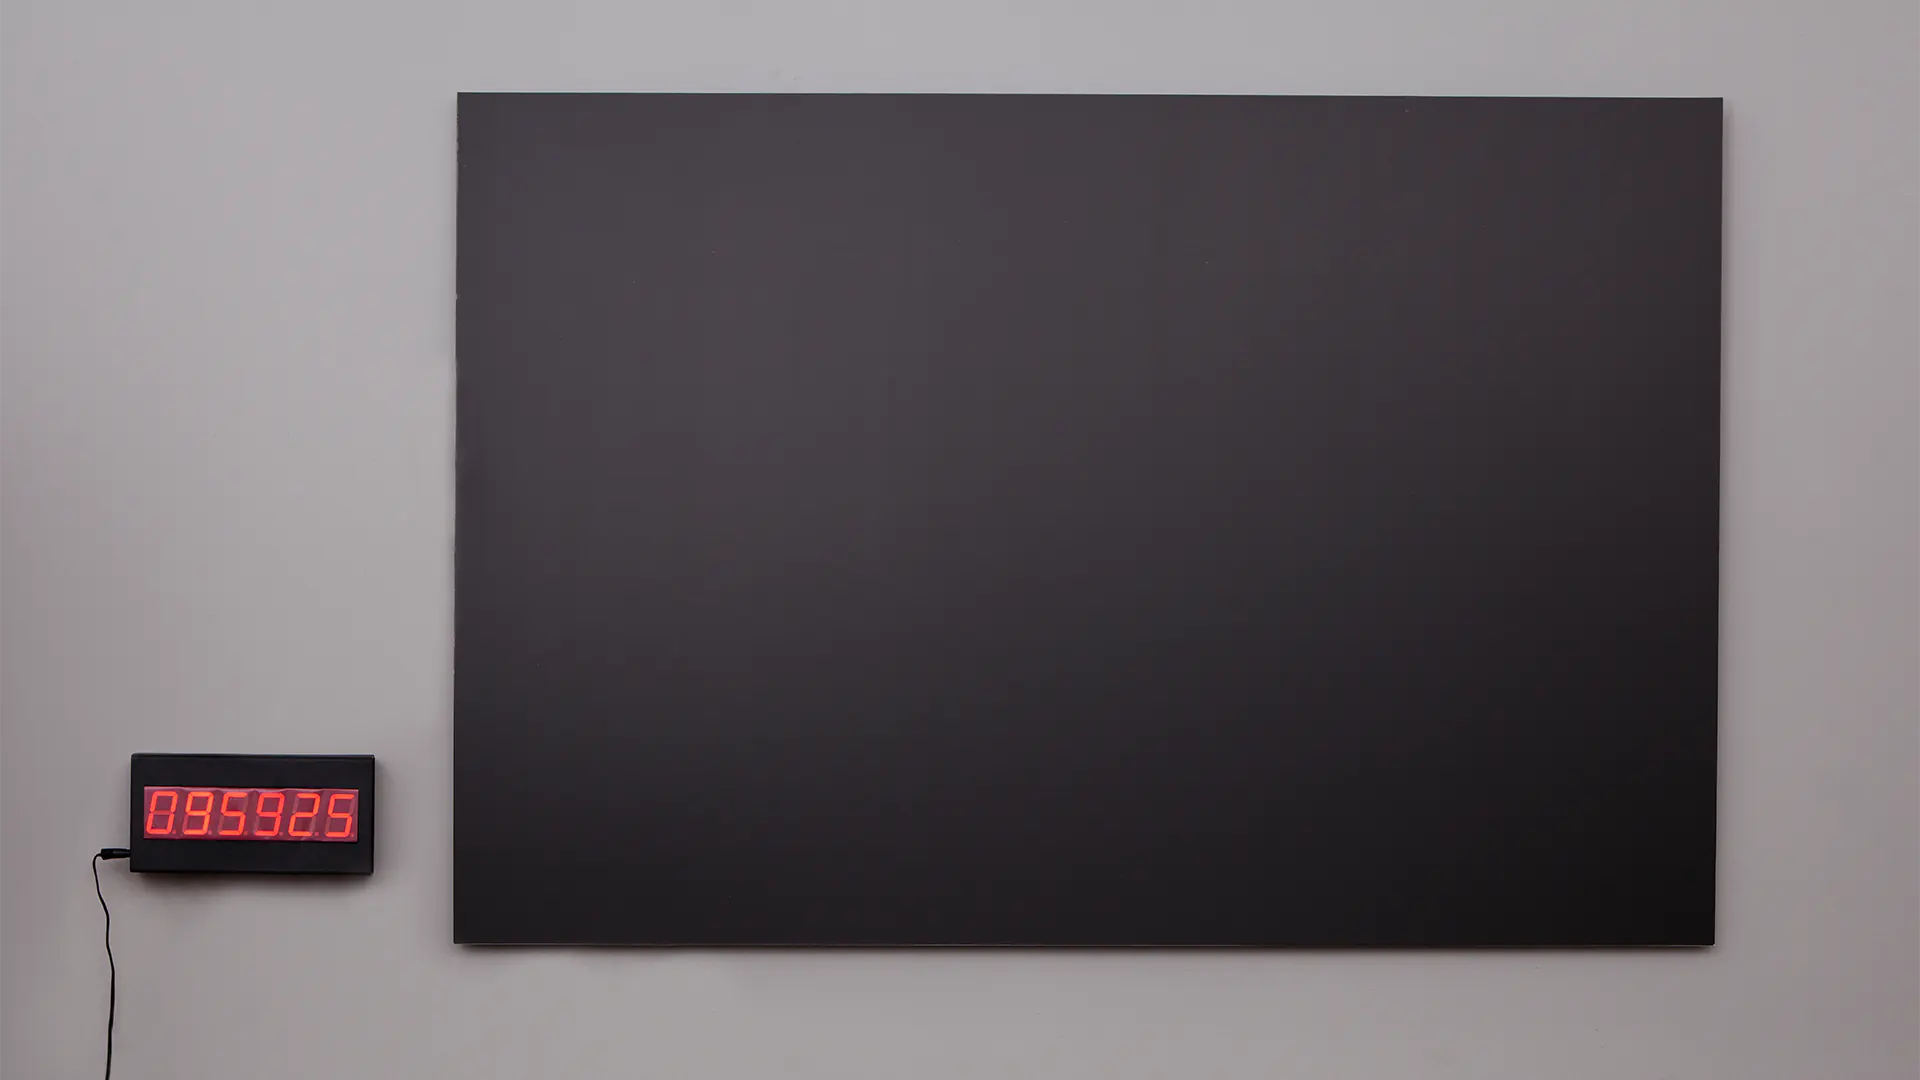 A Fekete lyuk című installáció egy üres, fekete képből és egy digitális számlálóból áll.